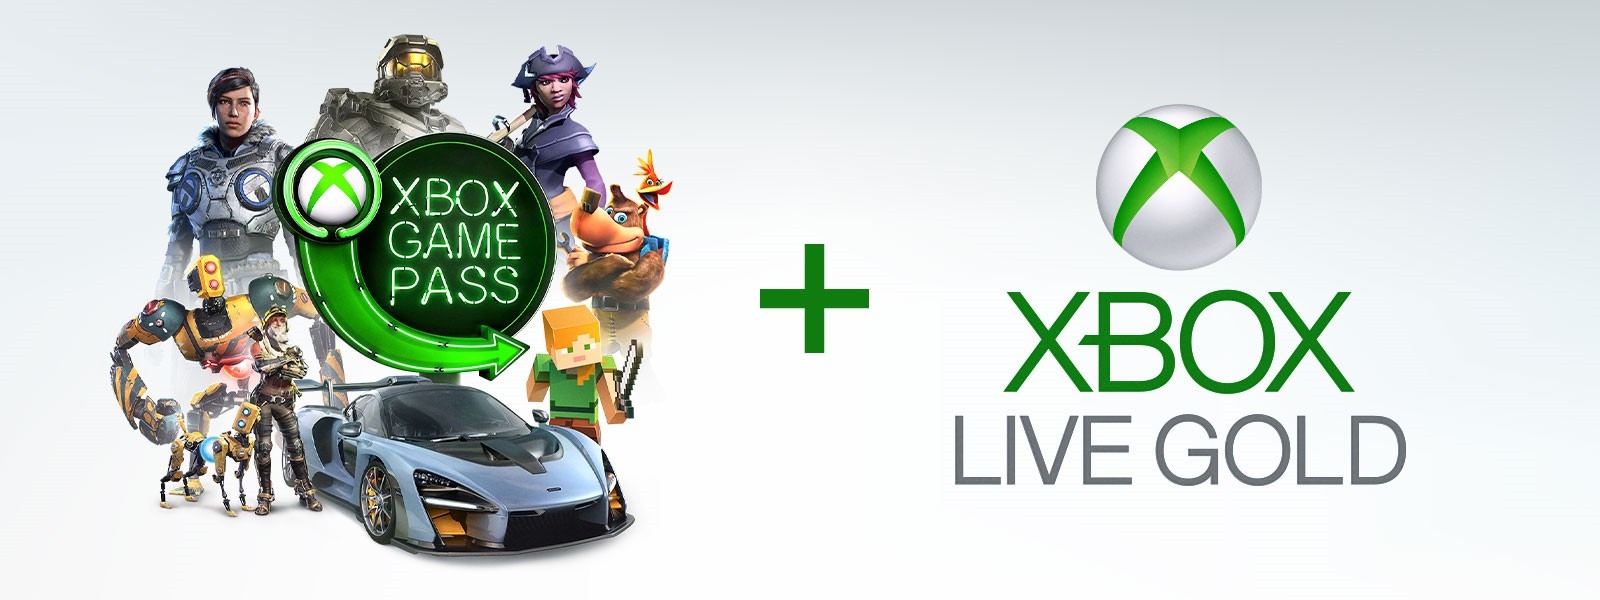 微软公布Xbox Game Pass高级会员 每月15美元